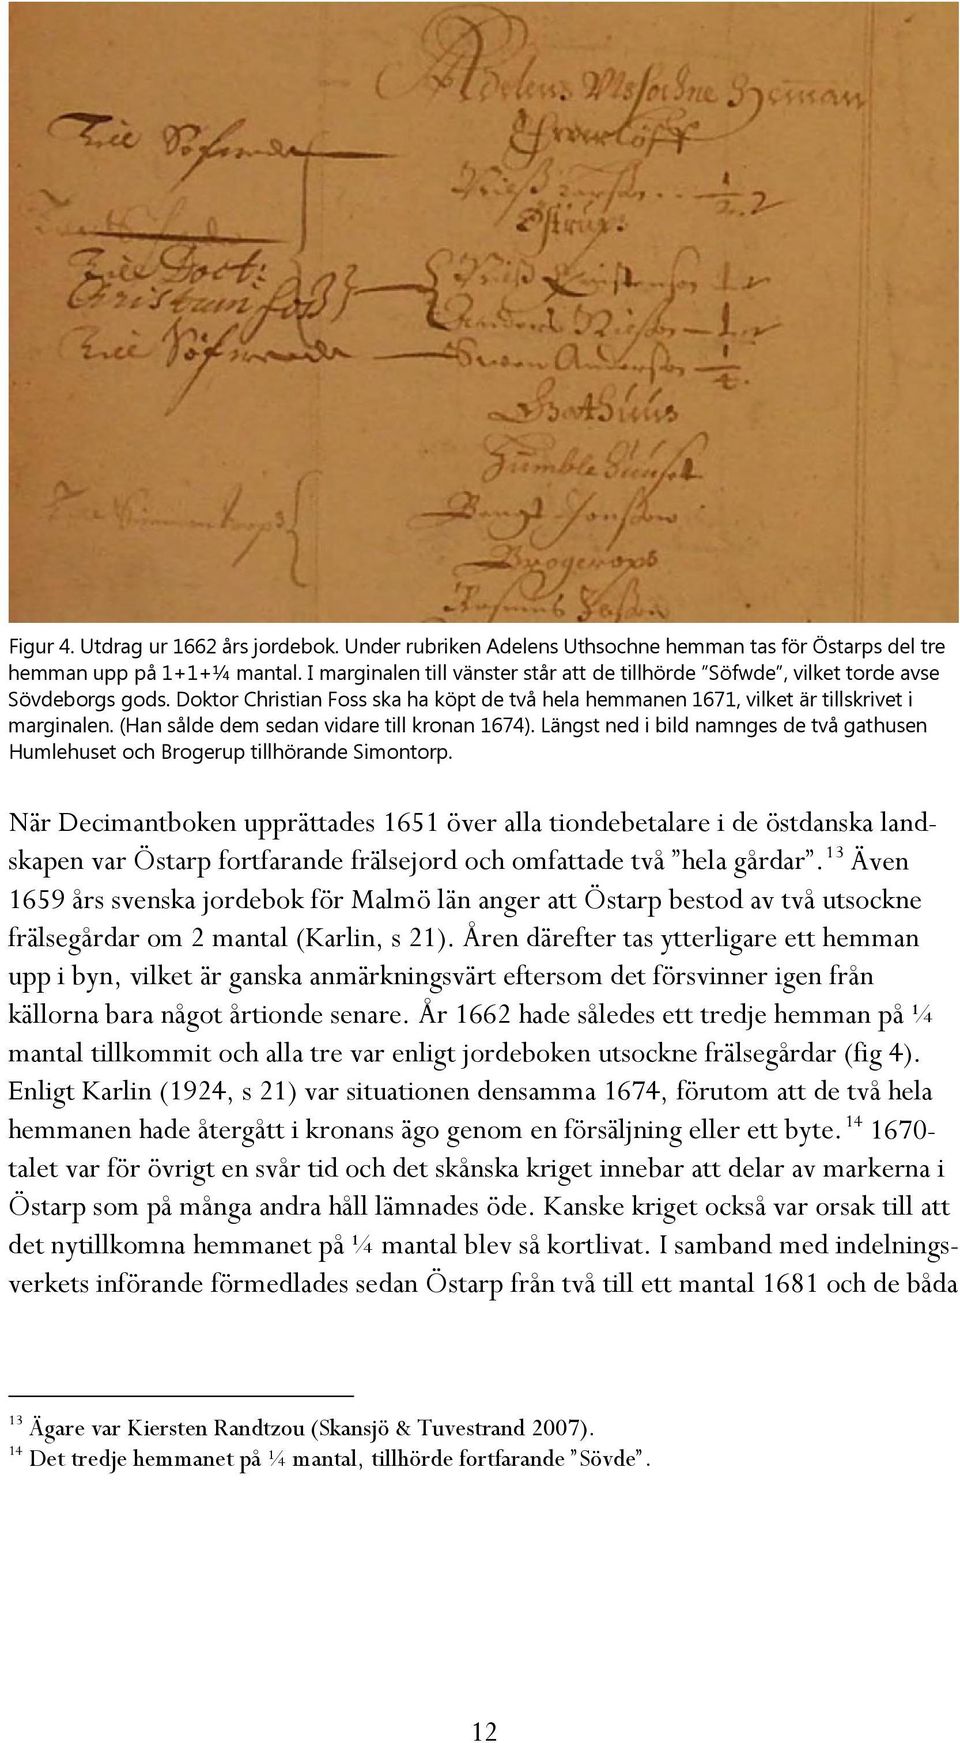 (Han sålde dem sedan vidare till kronan 1674). Längst ned i bild namnges de två gathusen Humlehuset och Brogerup tillhörande Simontorp.